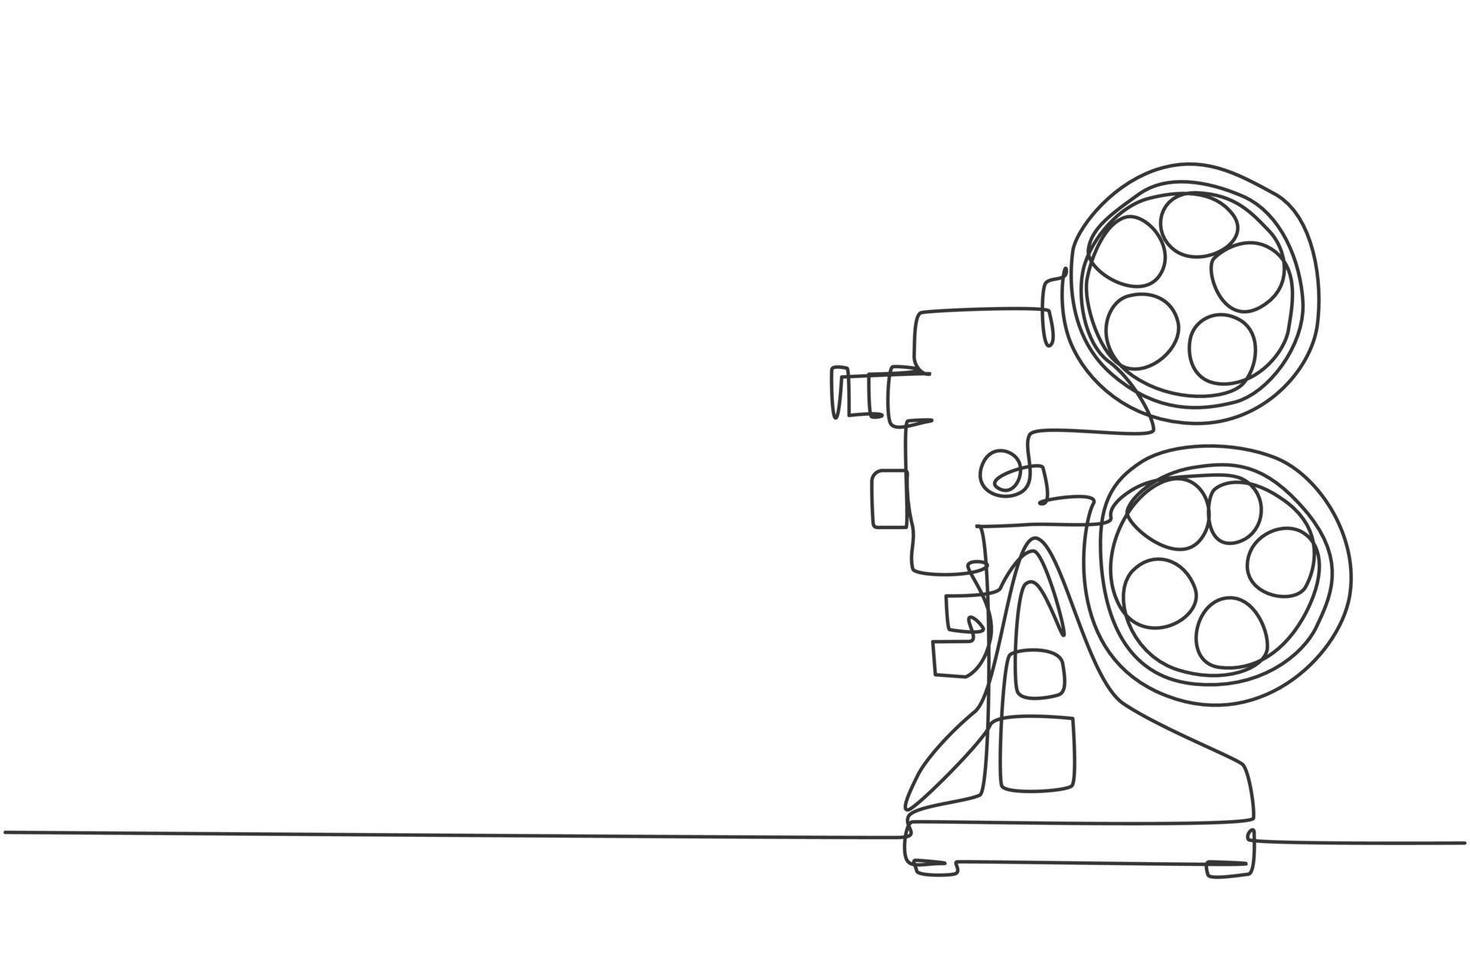 enkele doorlopende lijntekening van retro oude klassieke videospeler. vintage analoge film projector item concept een lijn tekenen ontwerp vector grafische illustratie